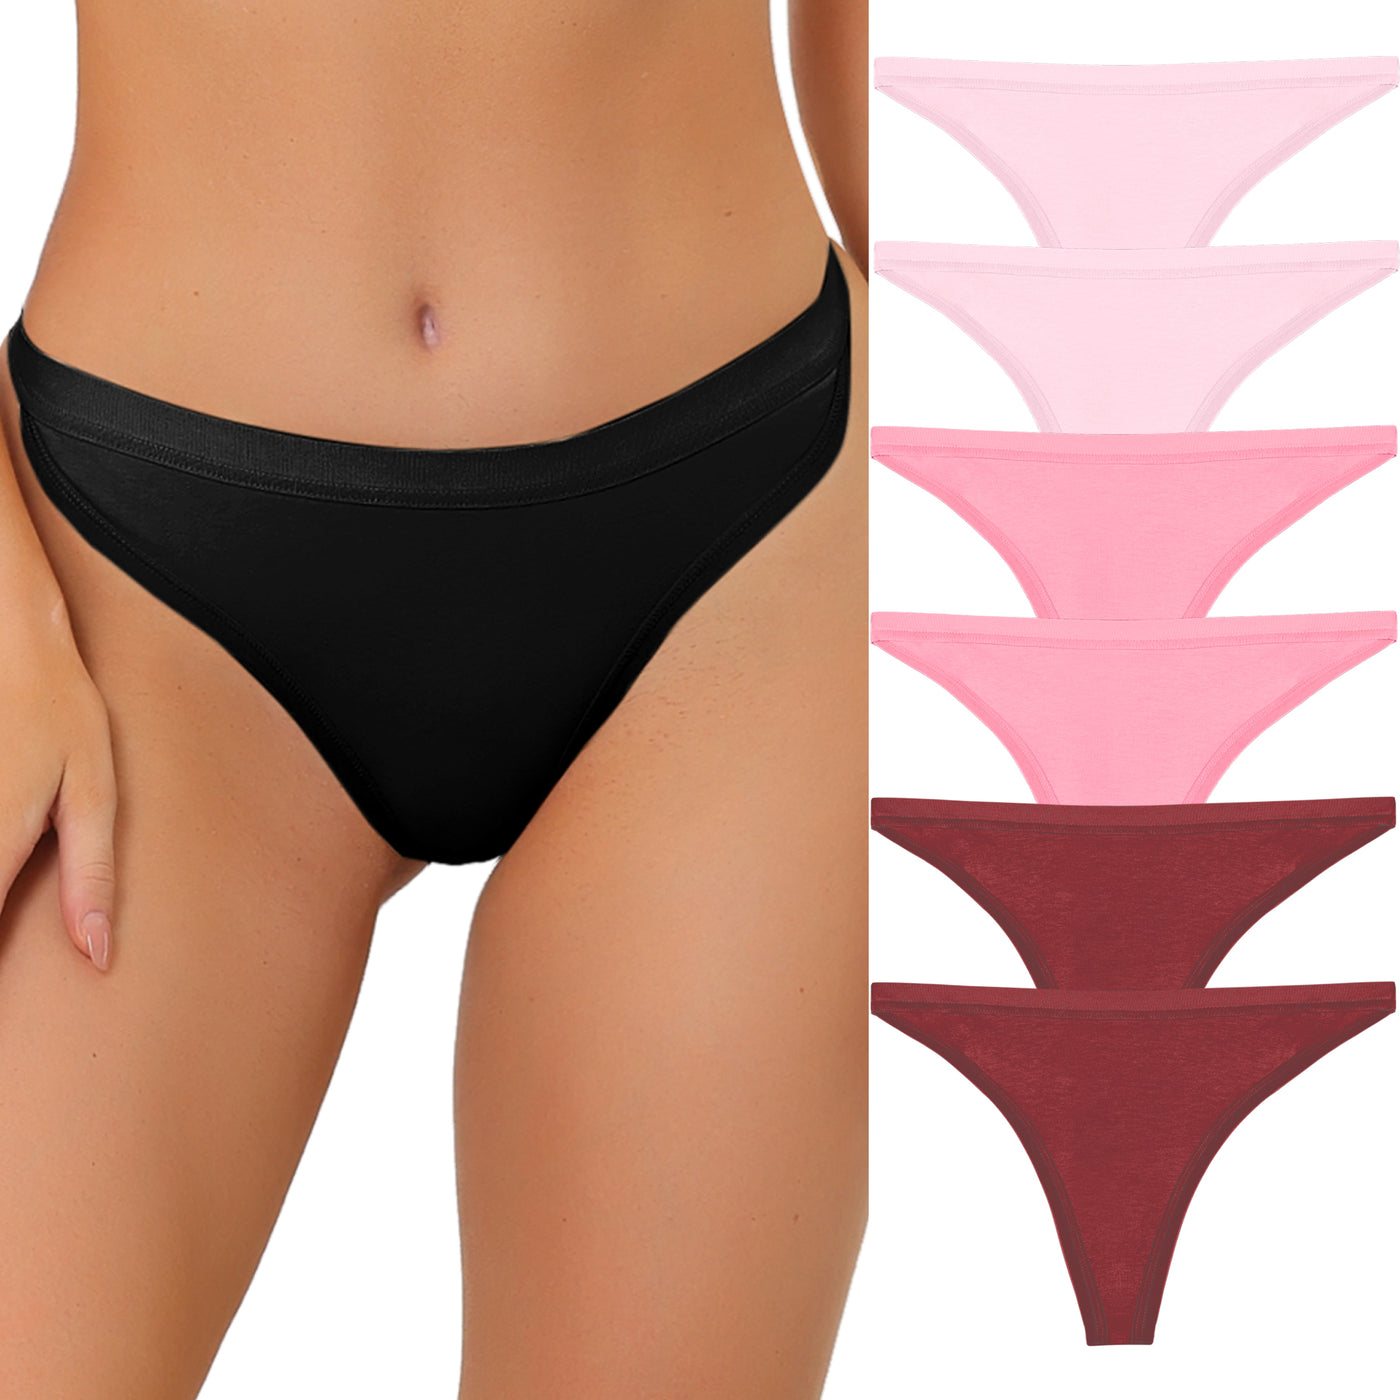 Allegra K Thongs for Women Packs G-String Panties Breathable Hi-Cut Tangas Underwear